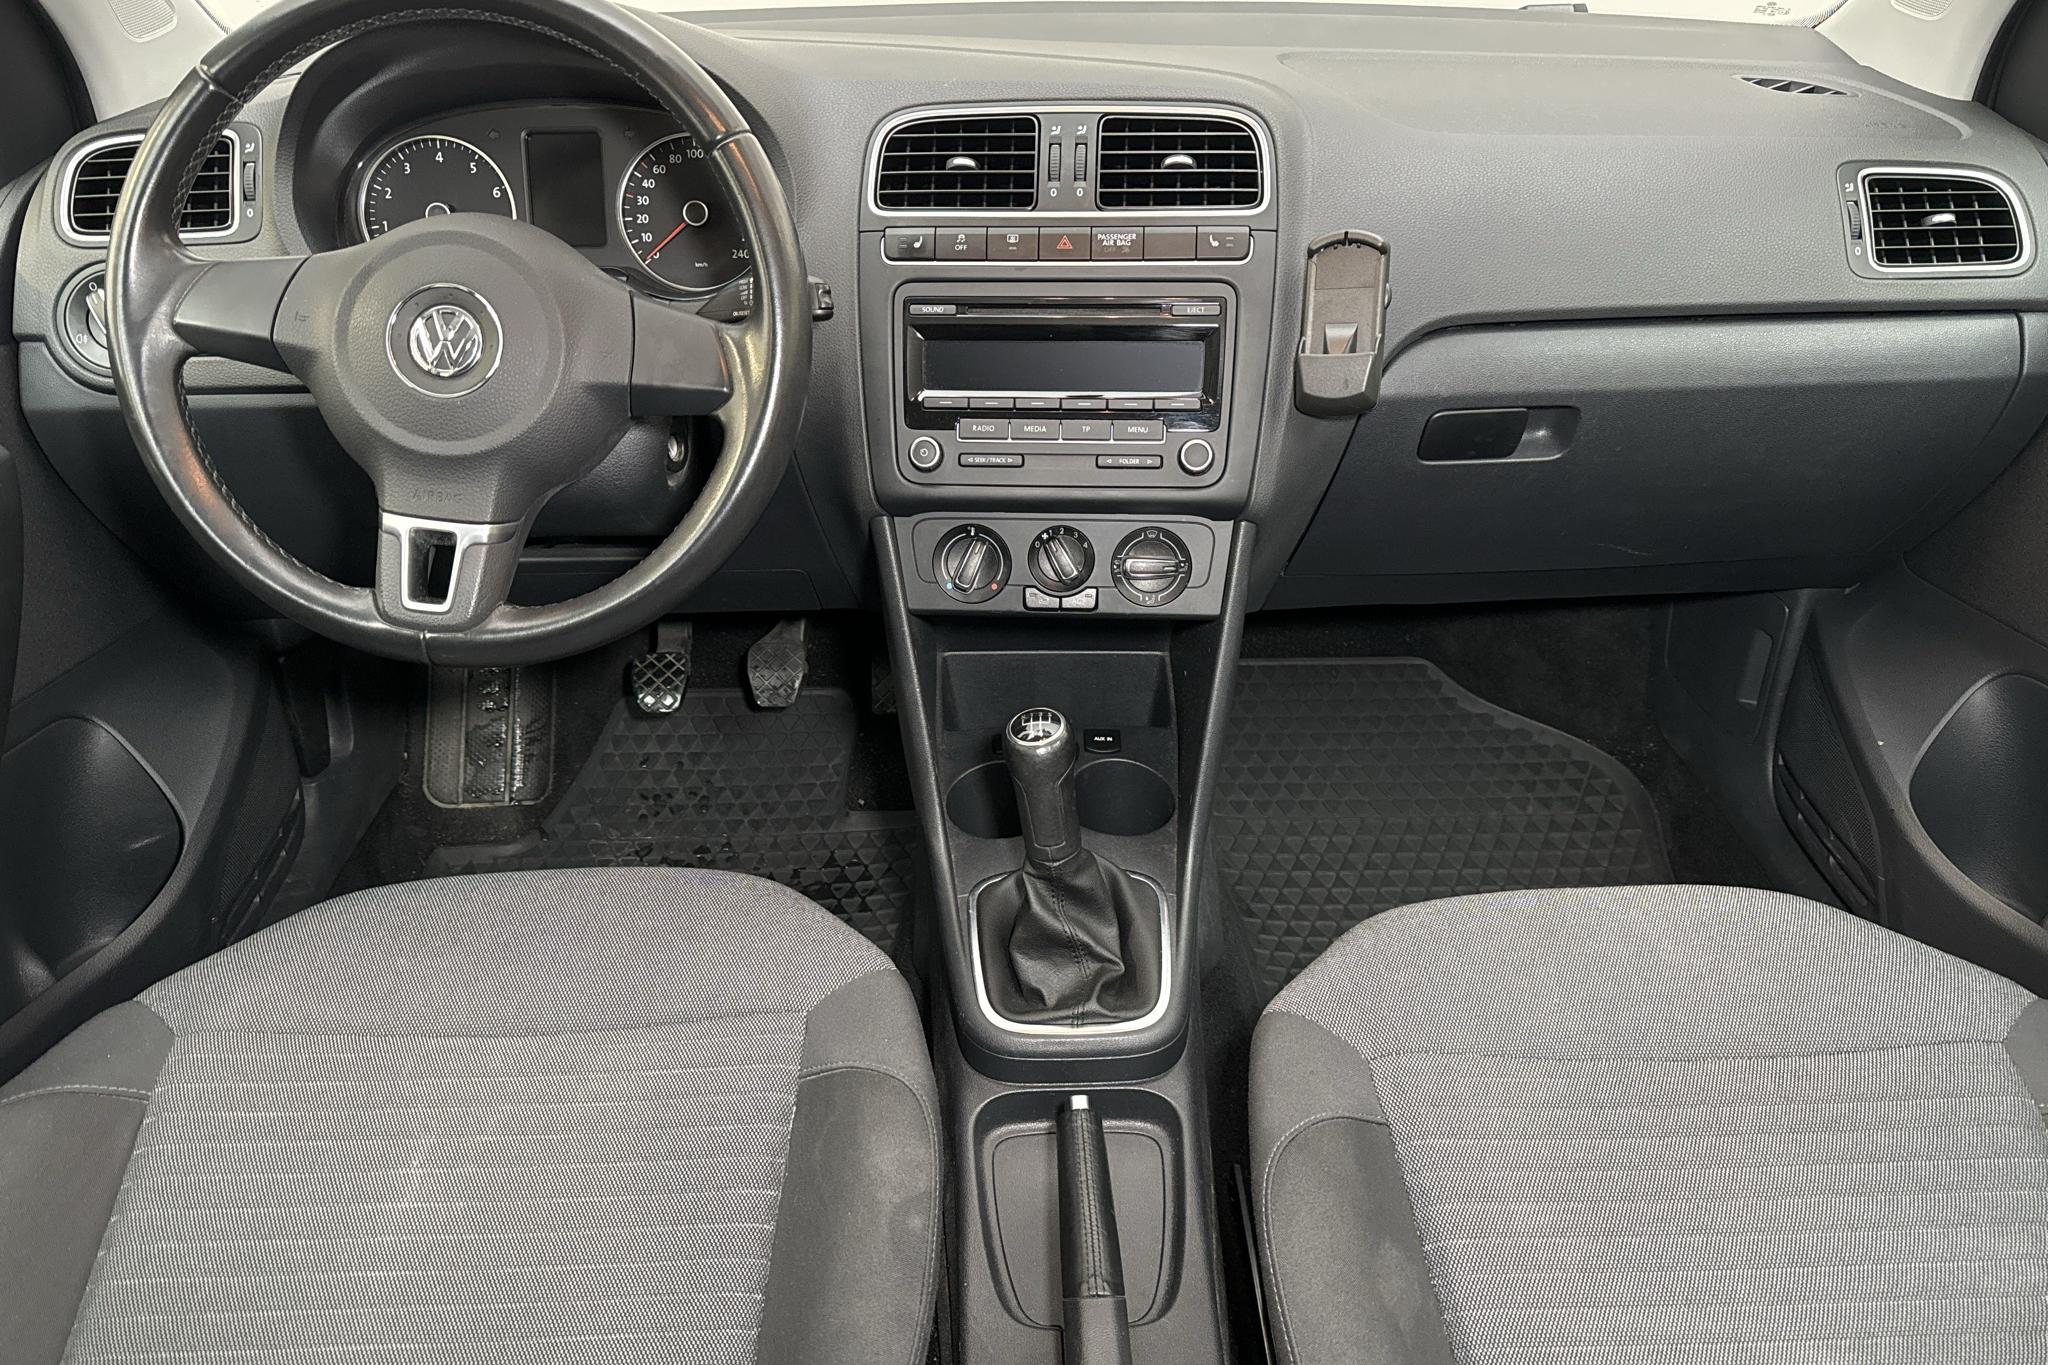 VW Polo 1.2 TSI 5dr (90hk) - 136 530 km - Manual - black - 2013